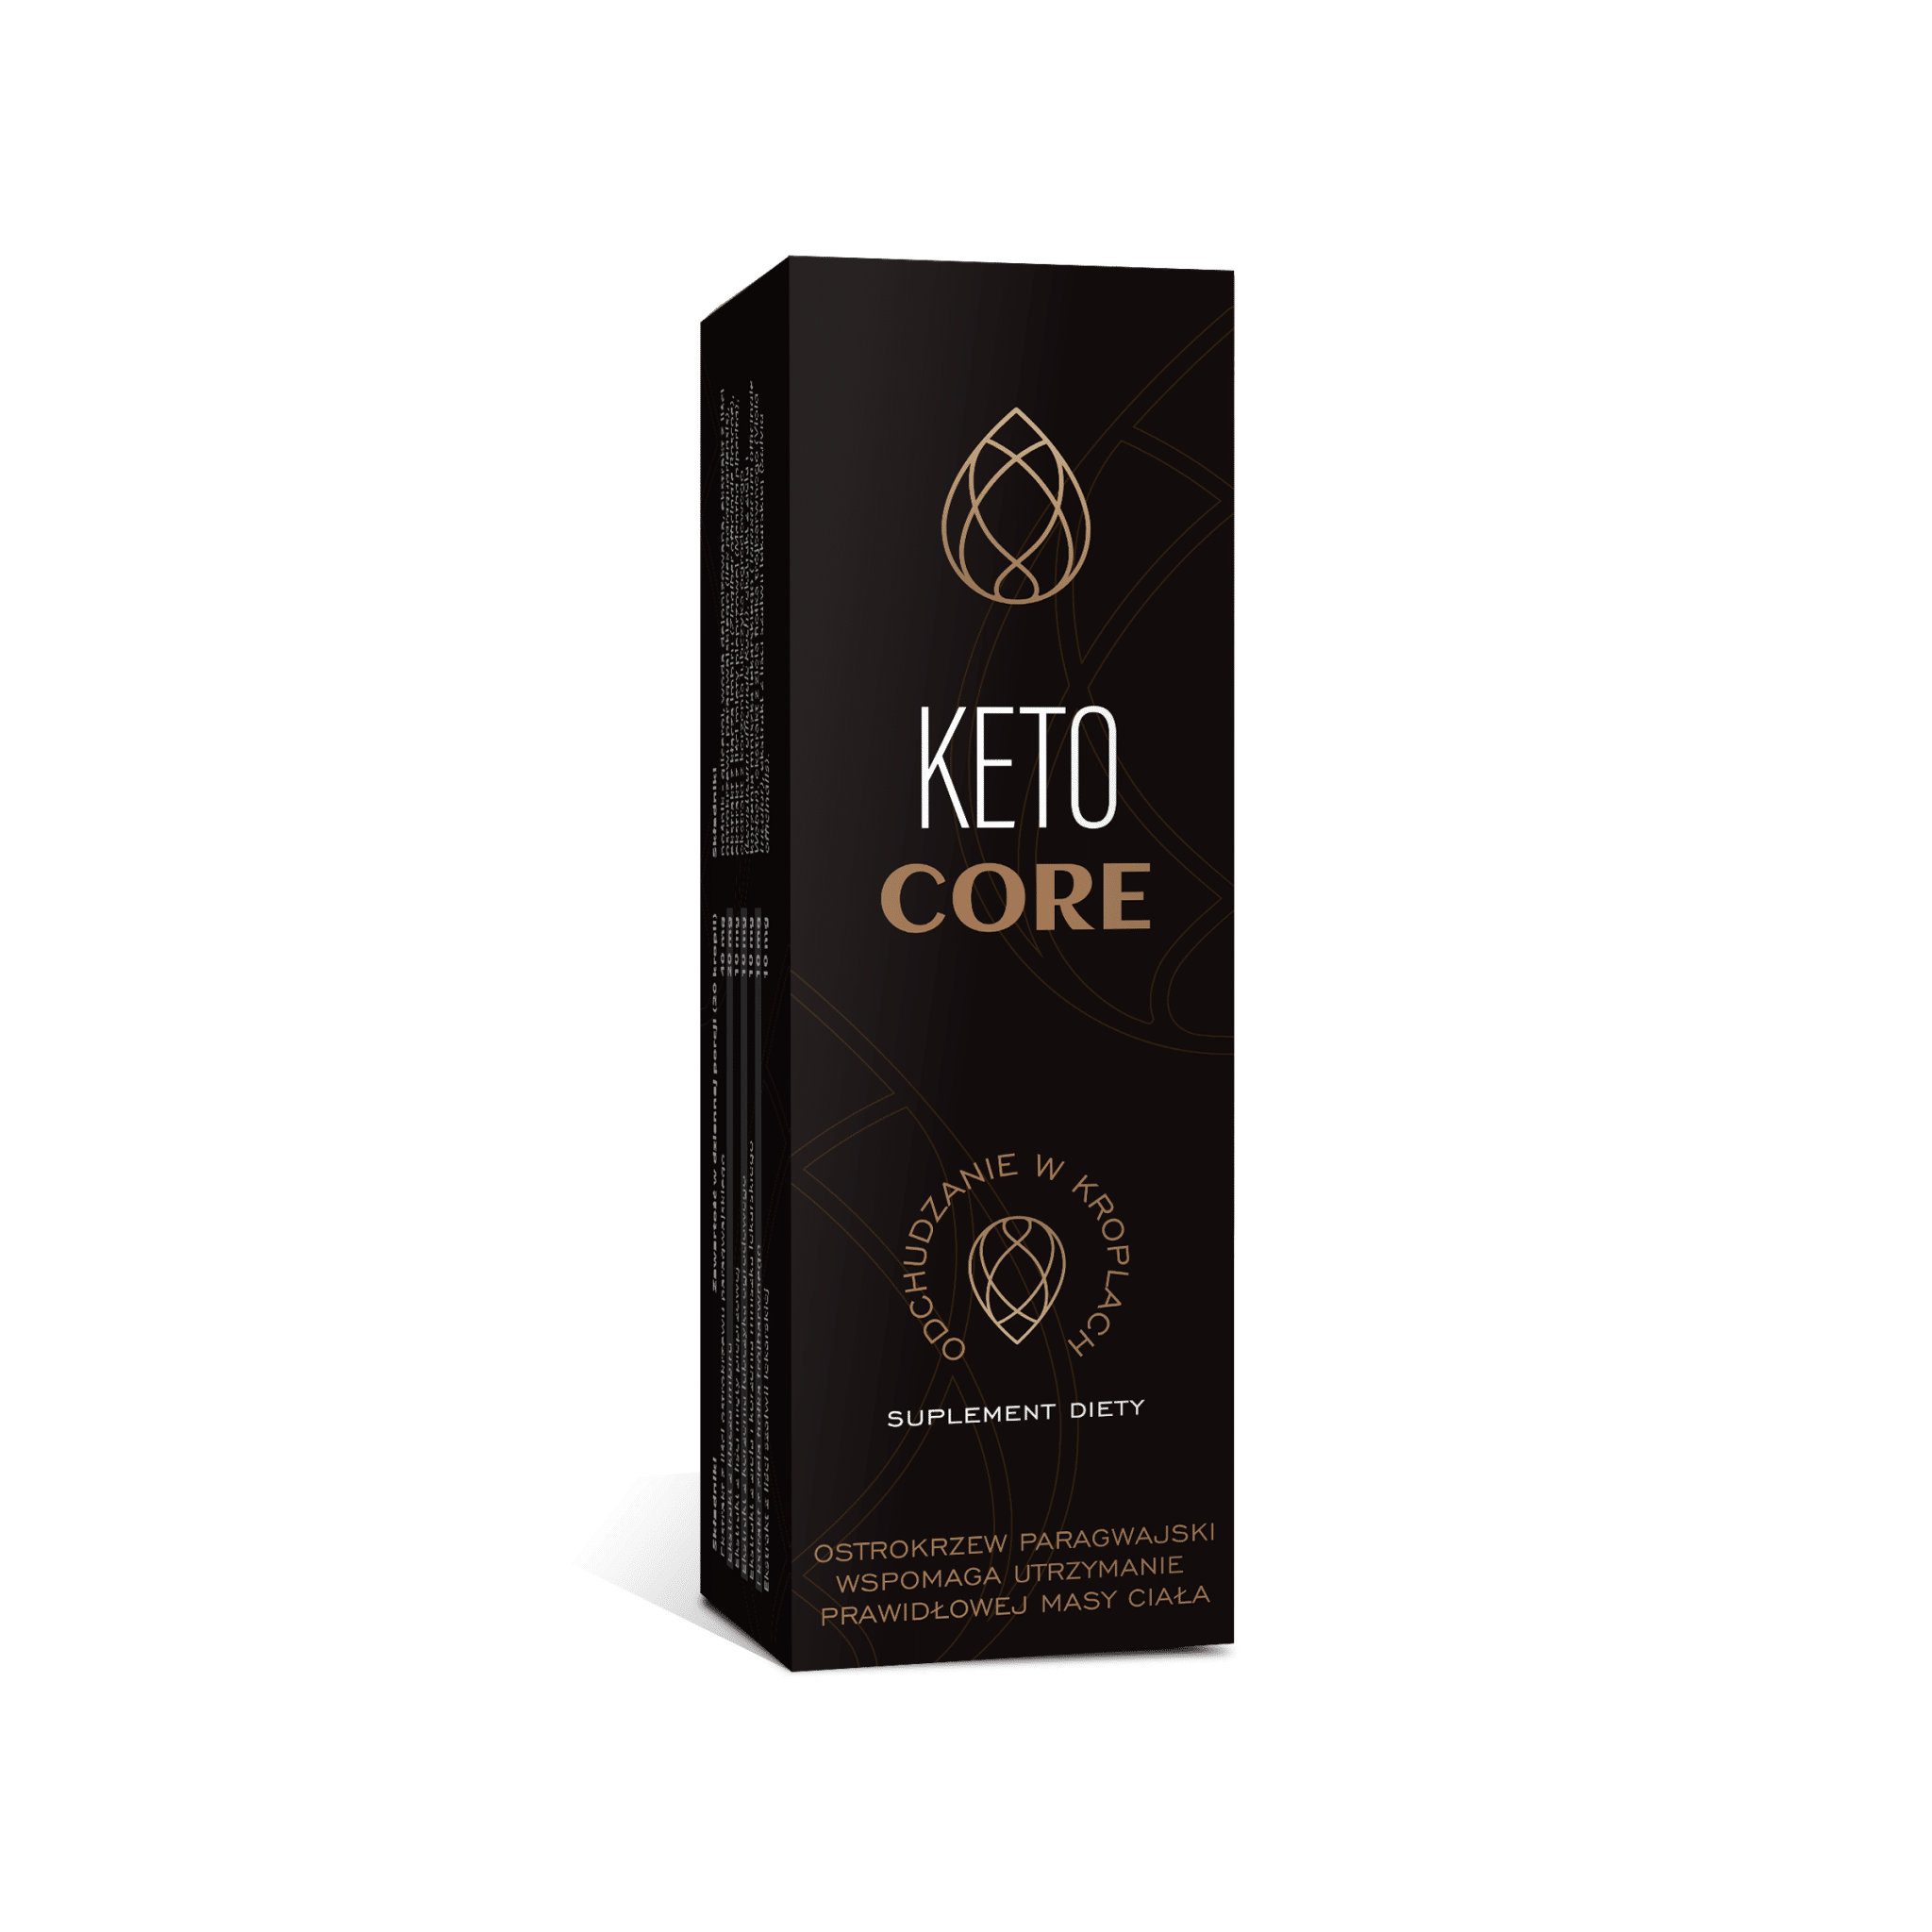 Keto Core What is it?